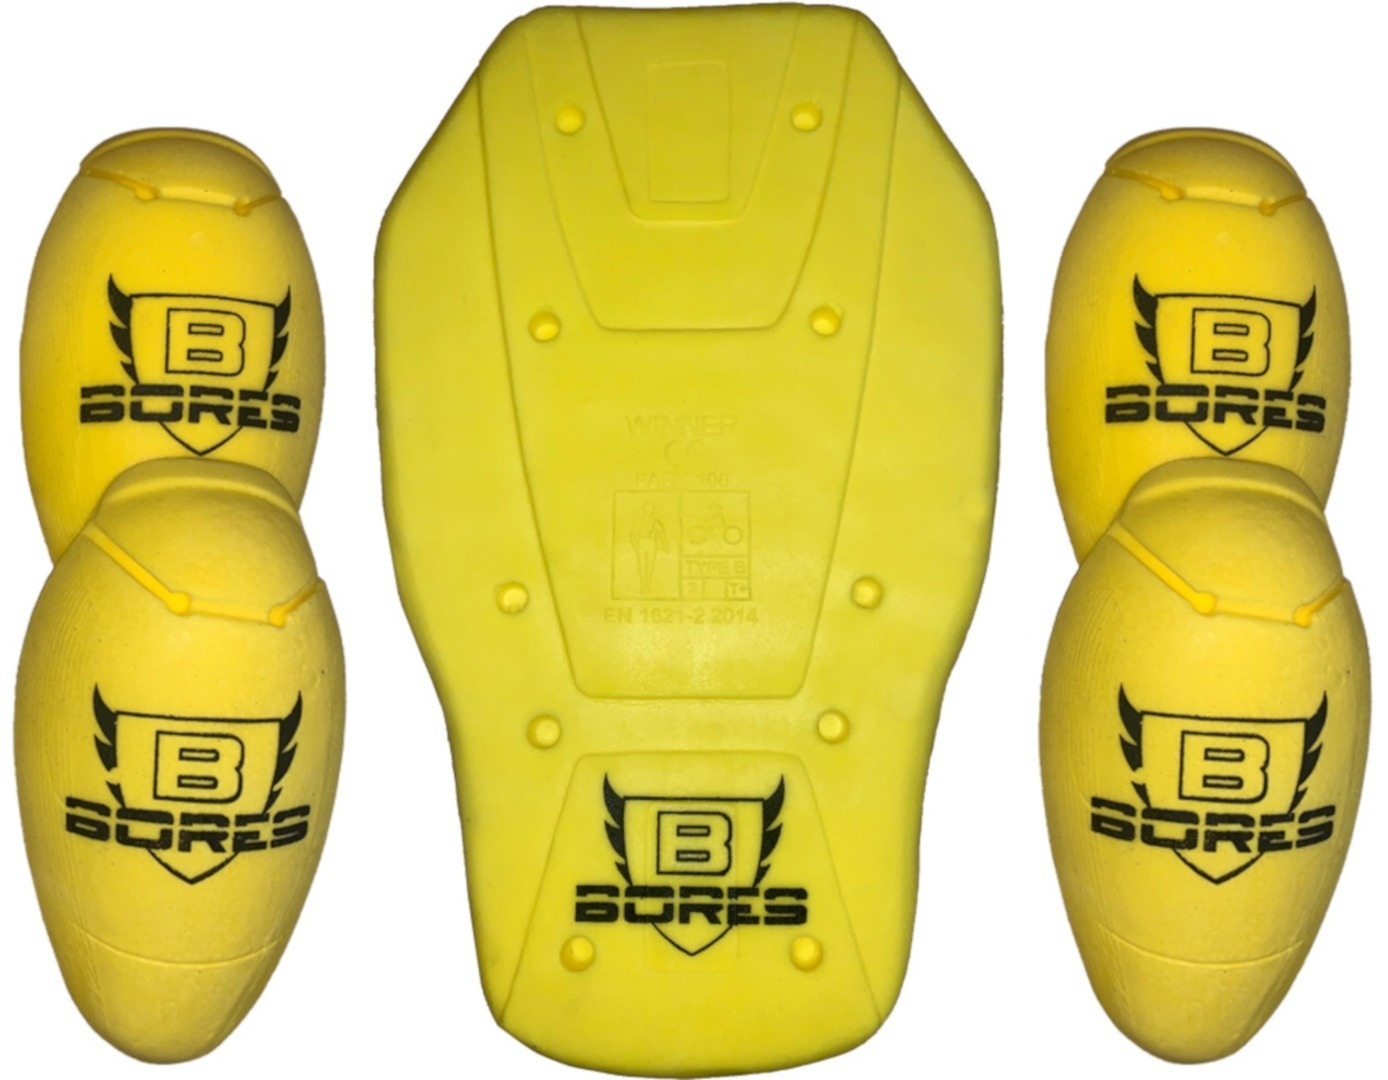 Bores Schulter/Ellenbogen/Rücken Protektoren Set, gelb